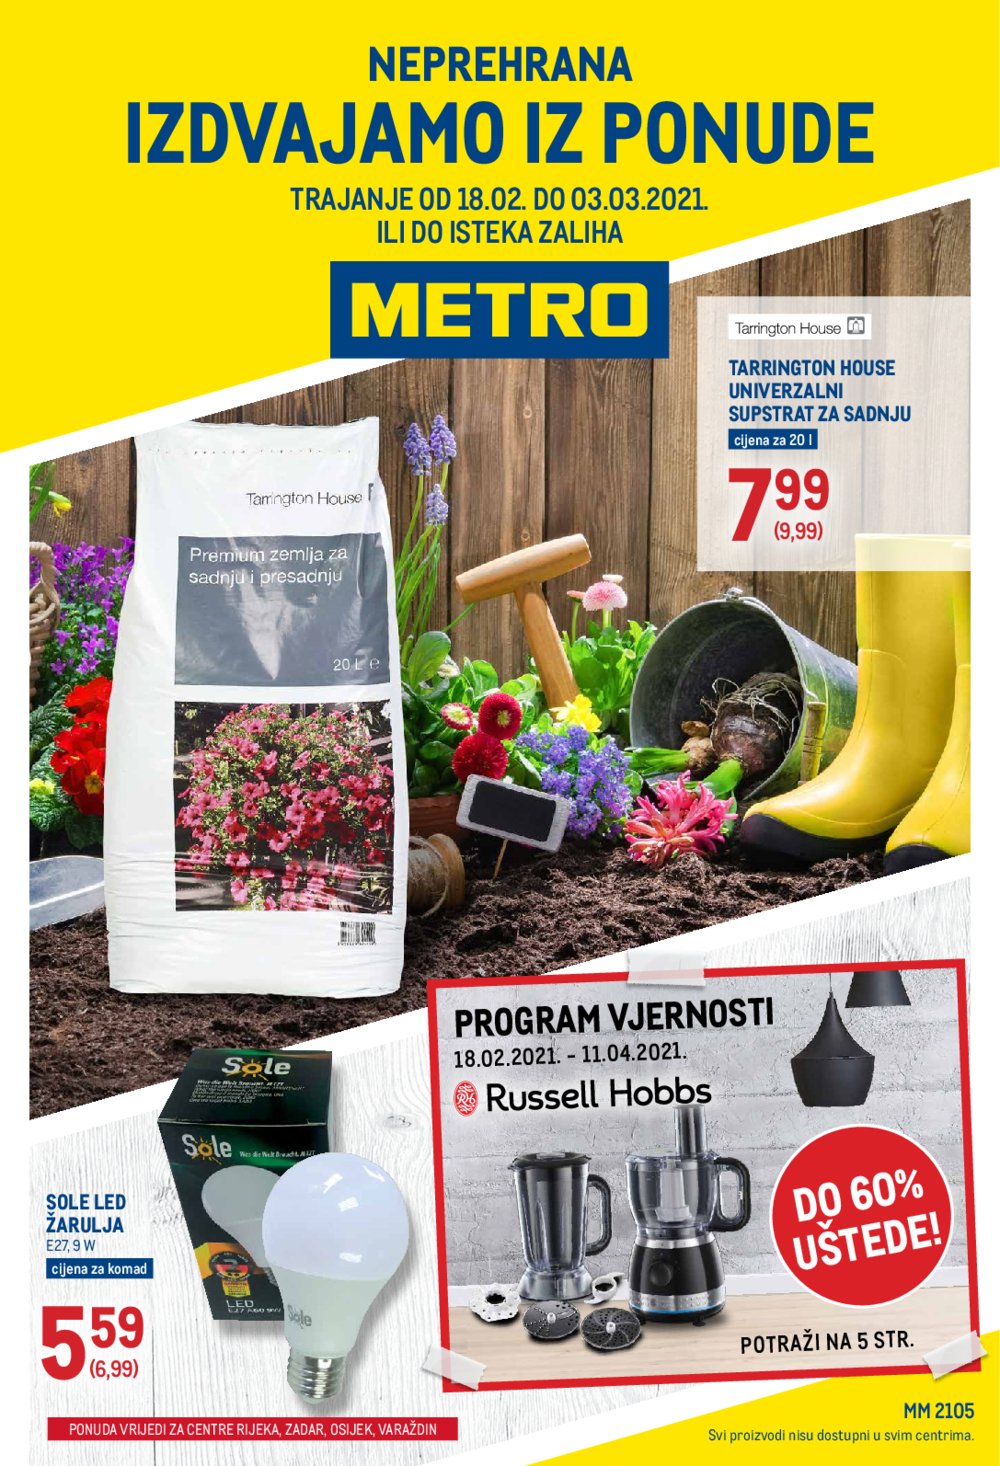 Metro katalog Neprehrana 18.02.-03.03.2021. 